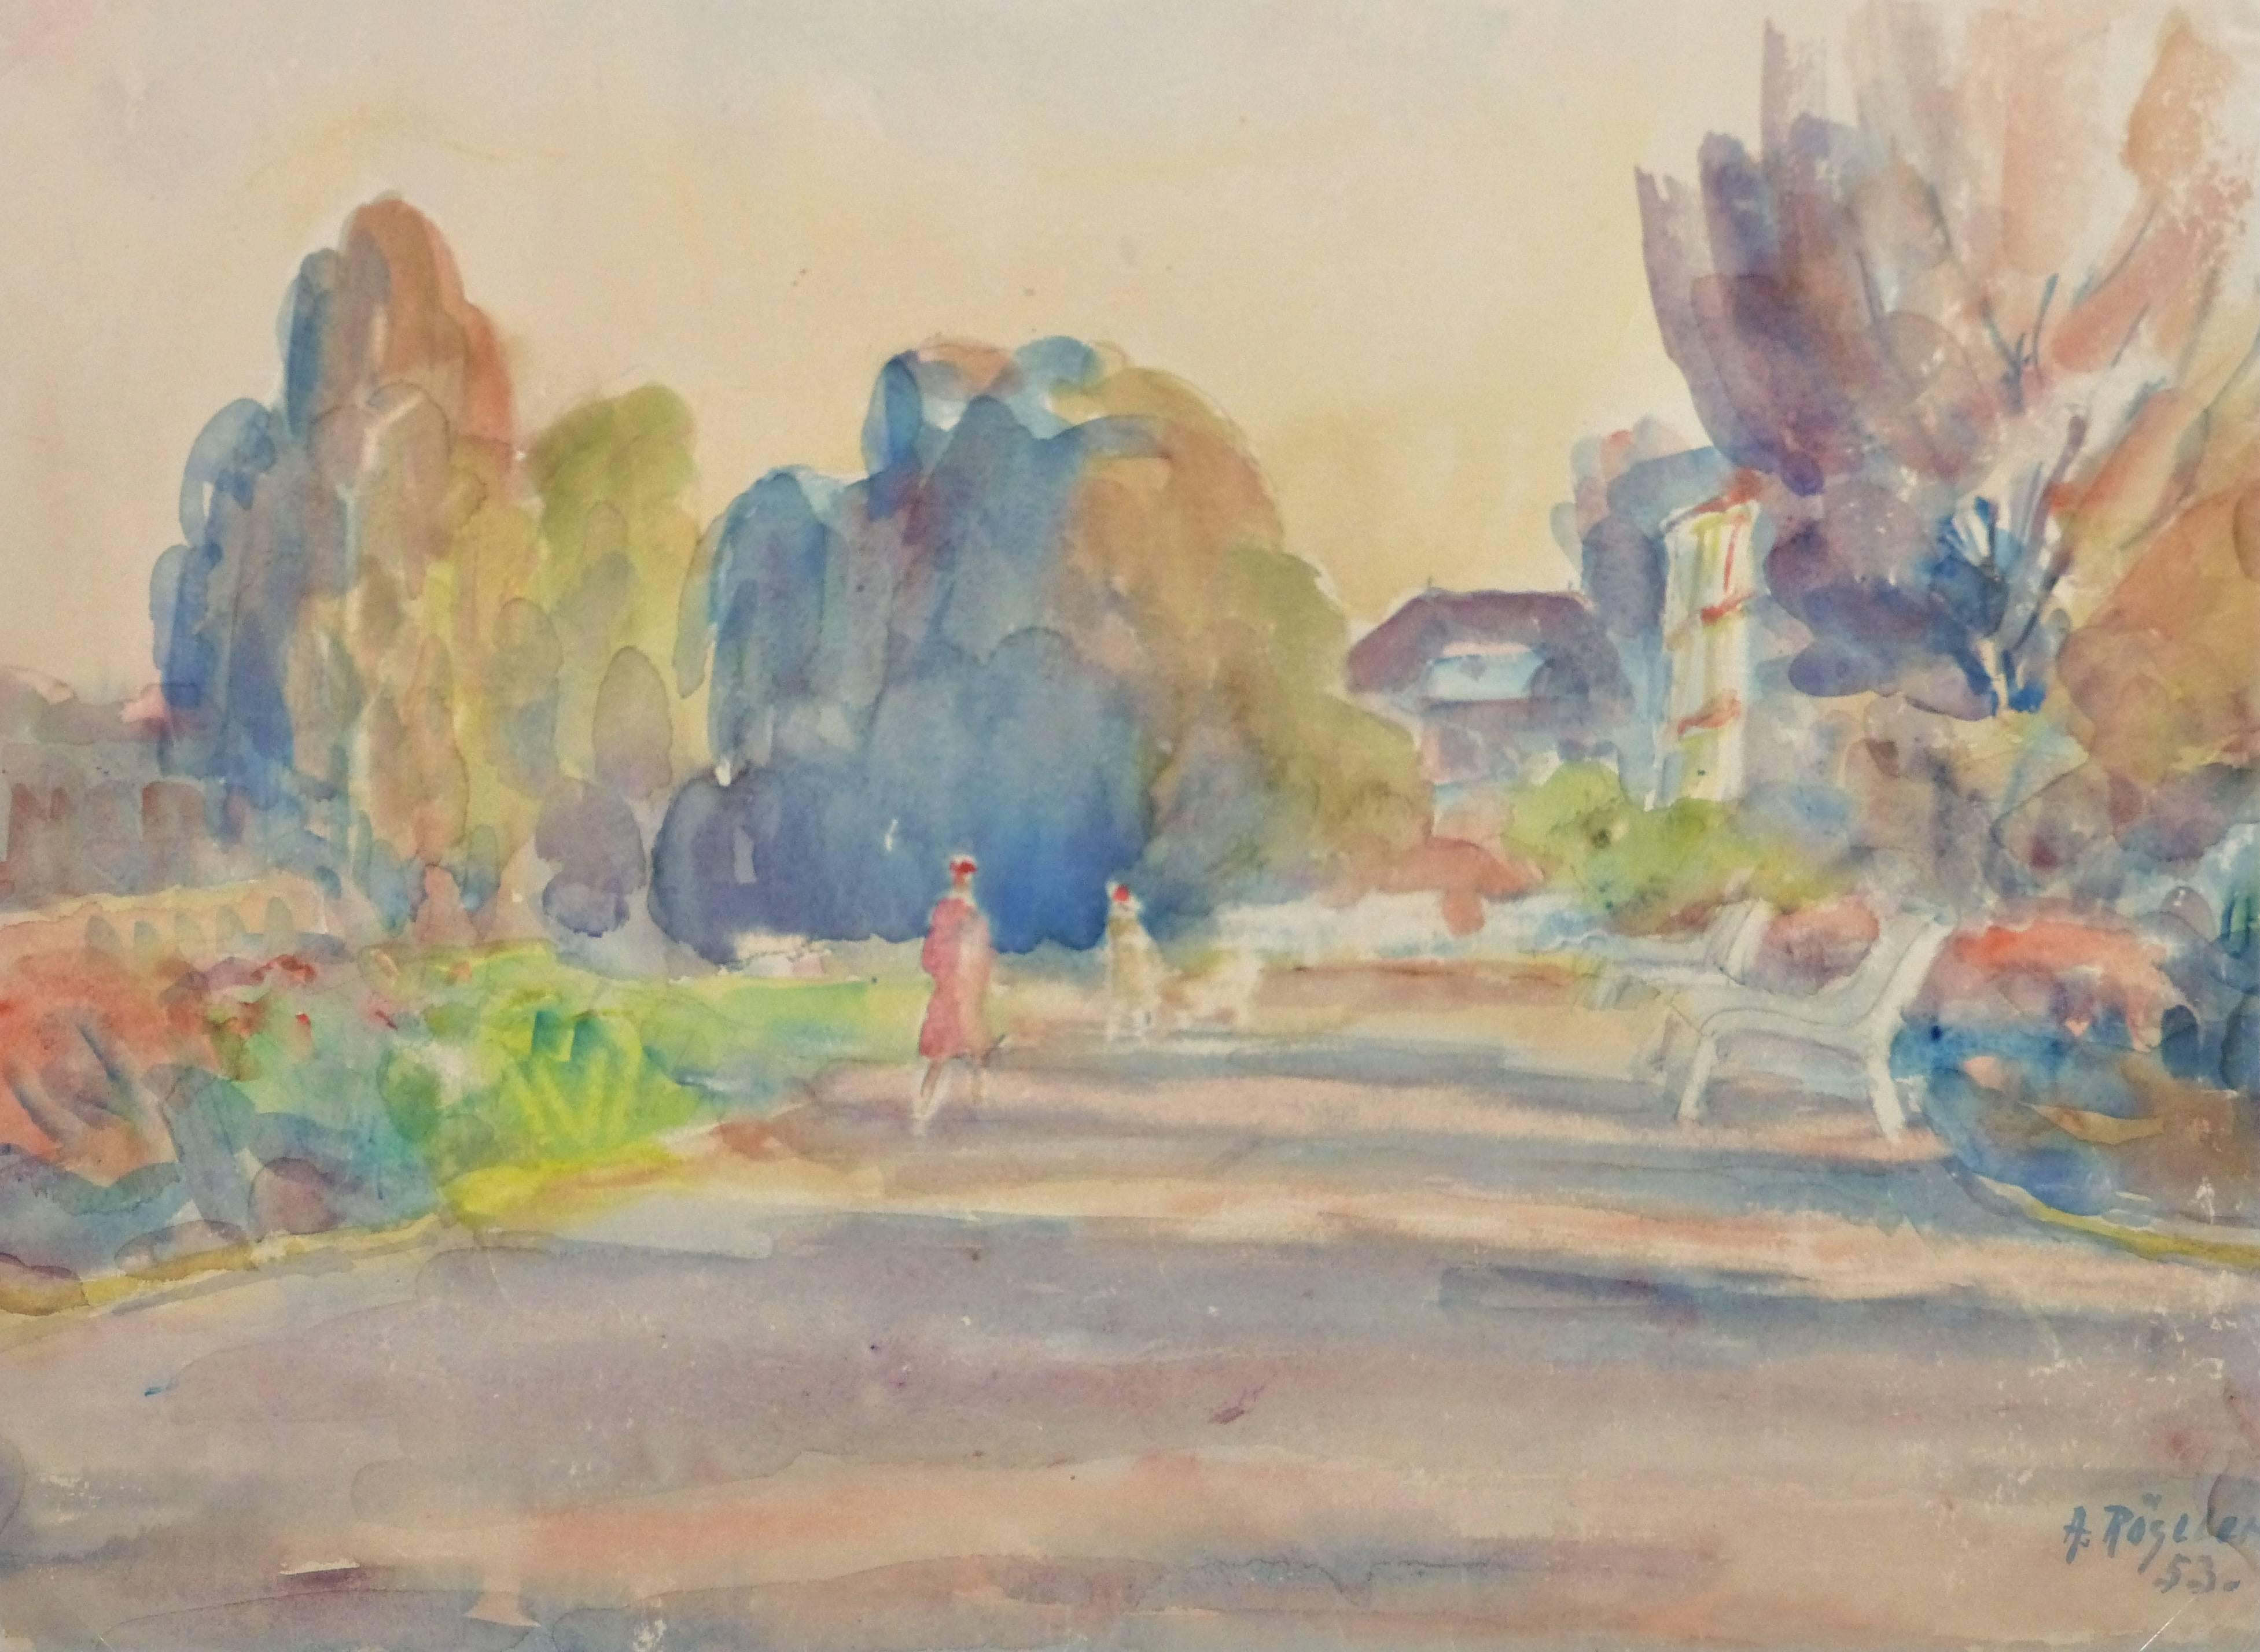 Alfred Rössler Landscape Art - Vintage Watercolor Landscape - Pastel-Toned Walk in the Park at Dusk